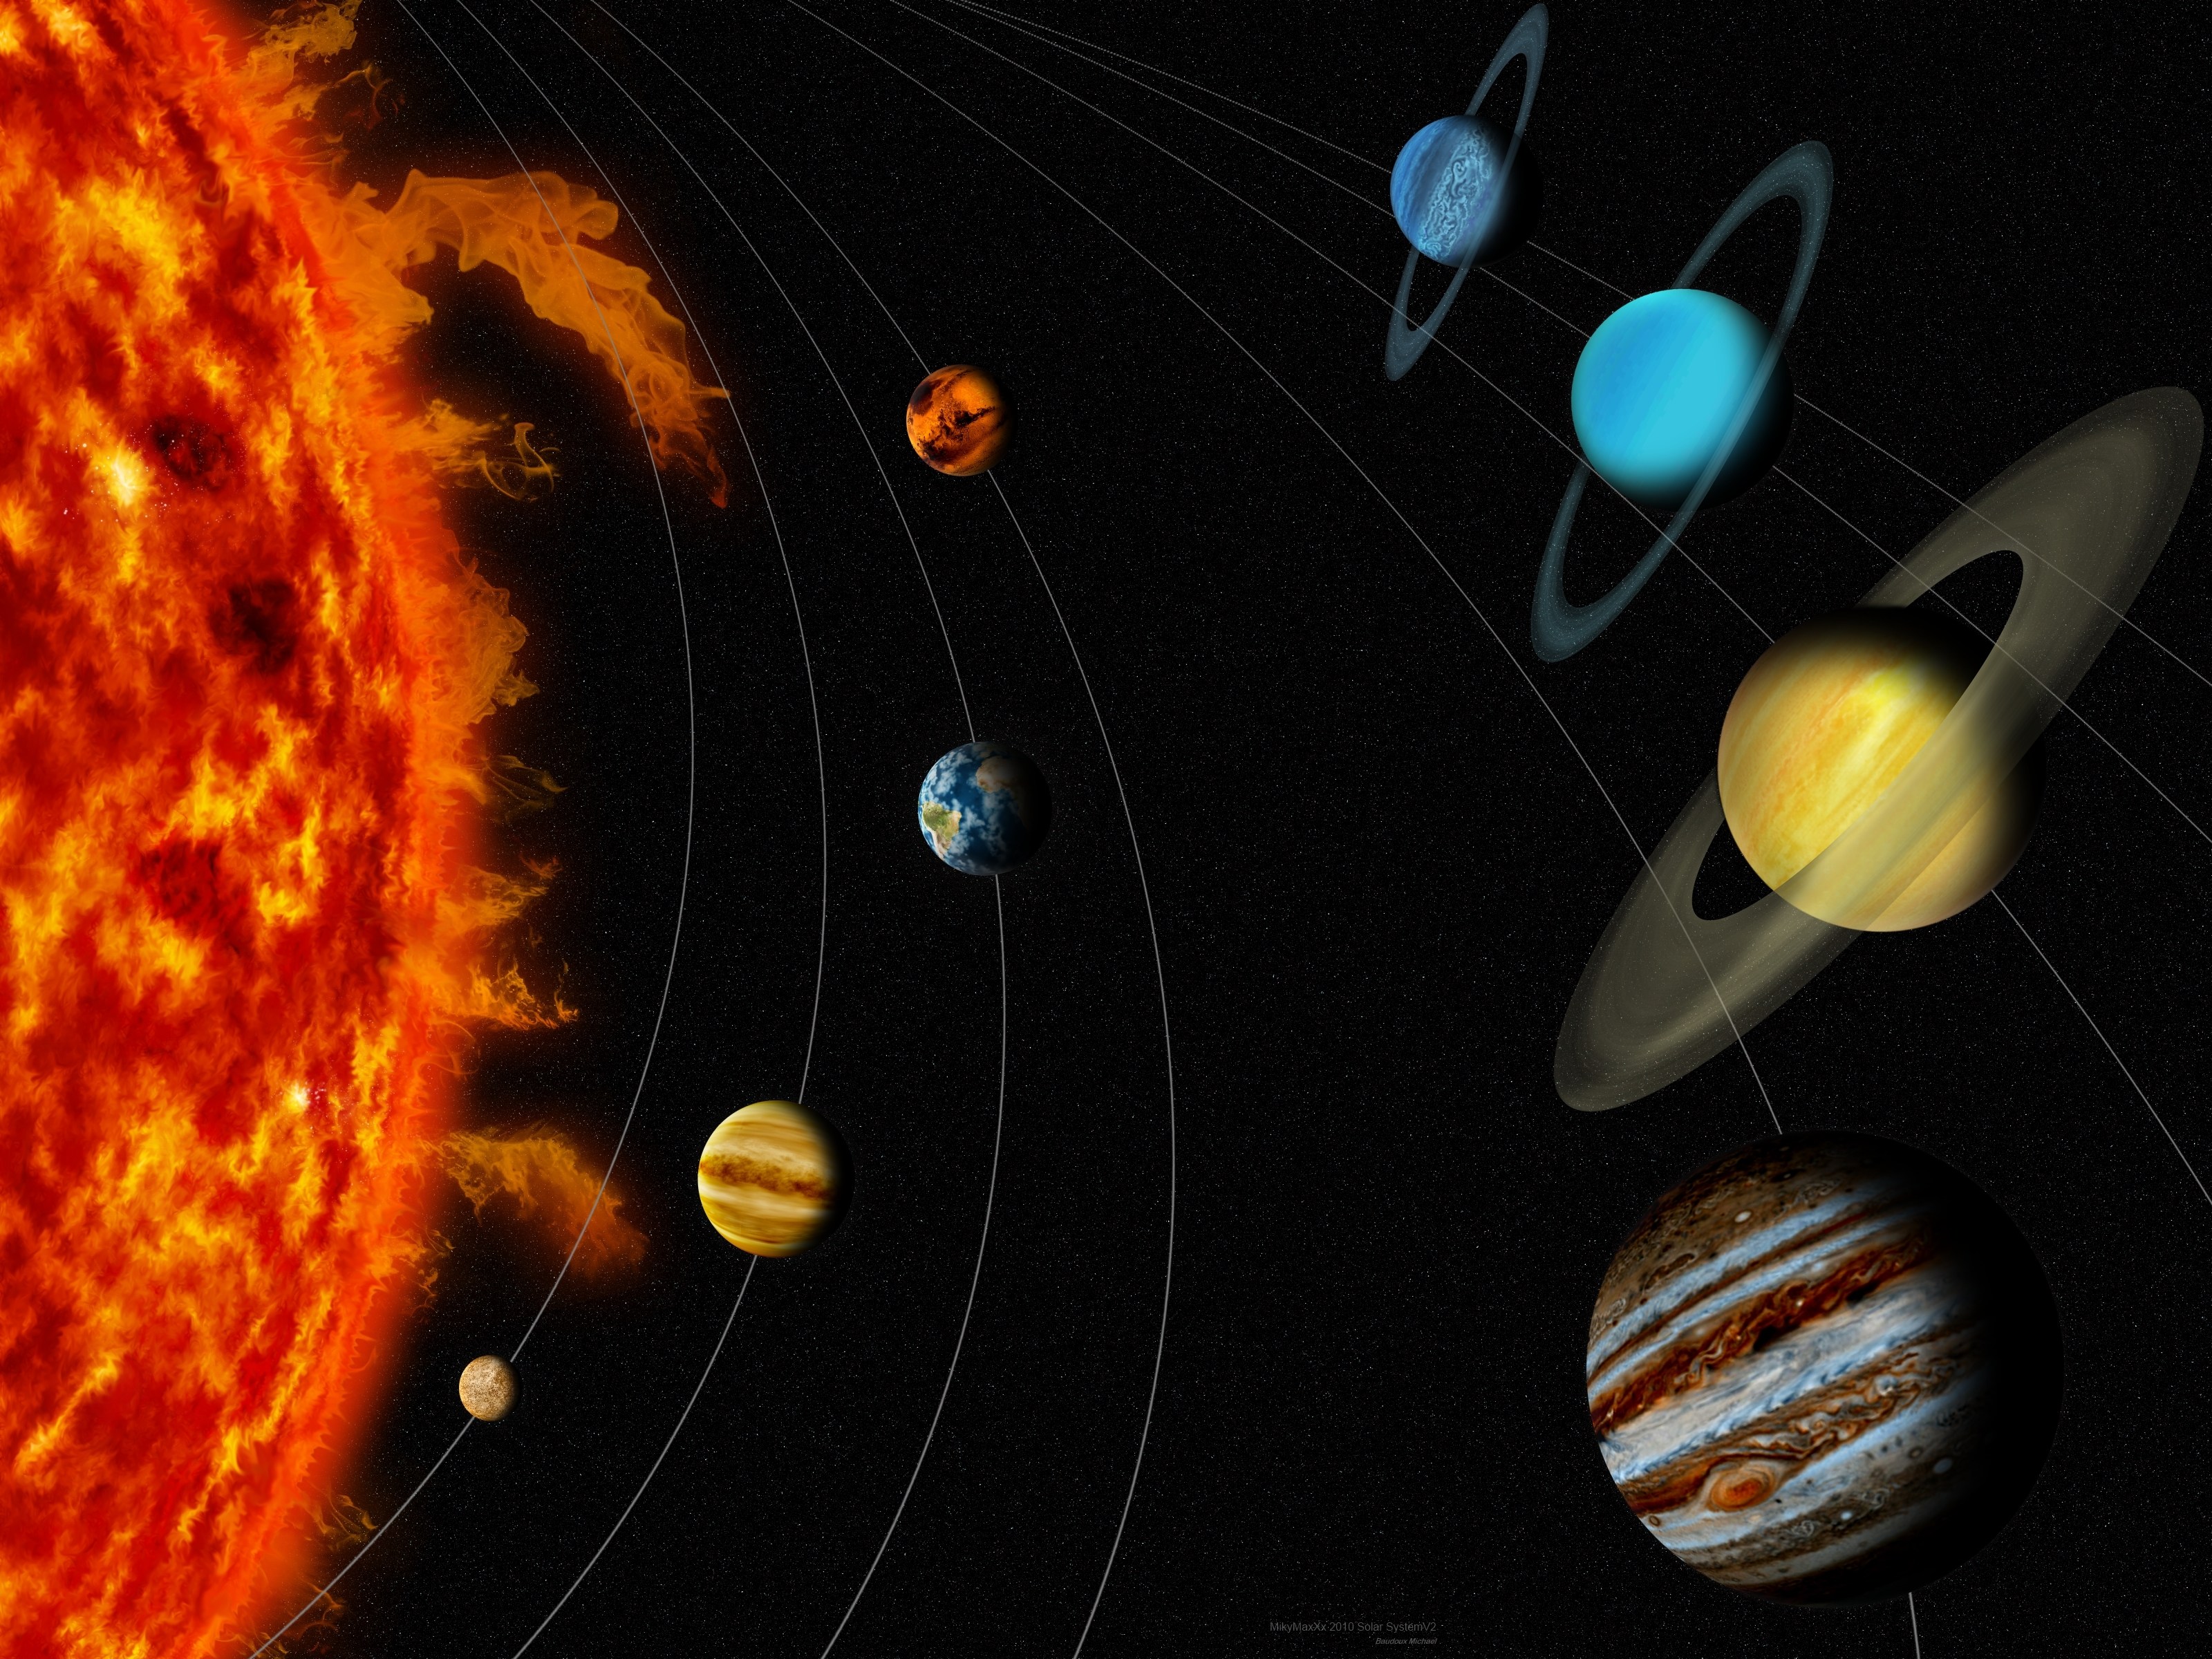 Фото планеты солнечной системы по порядку фото